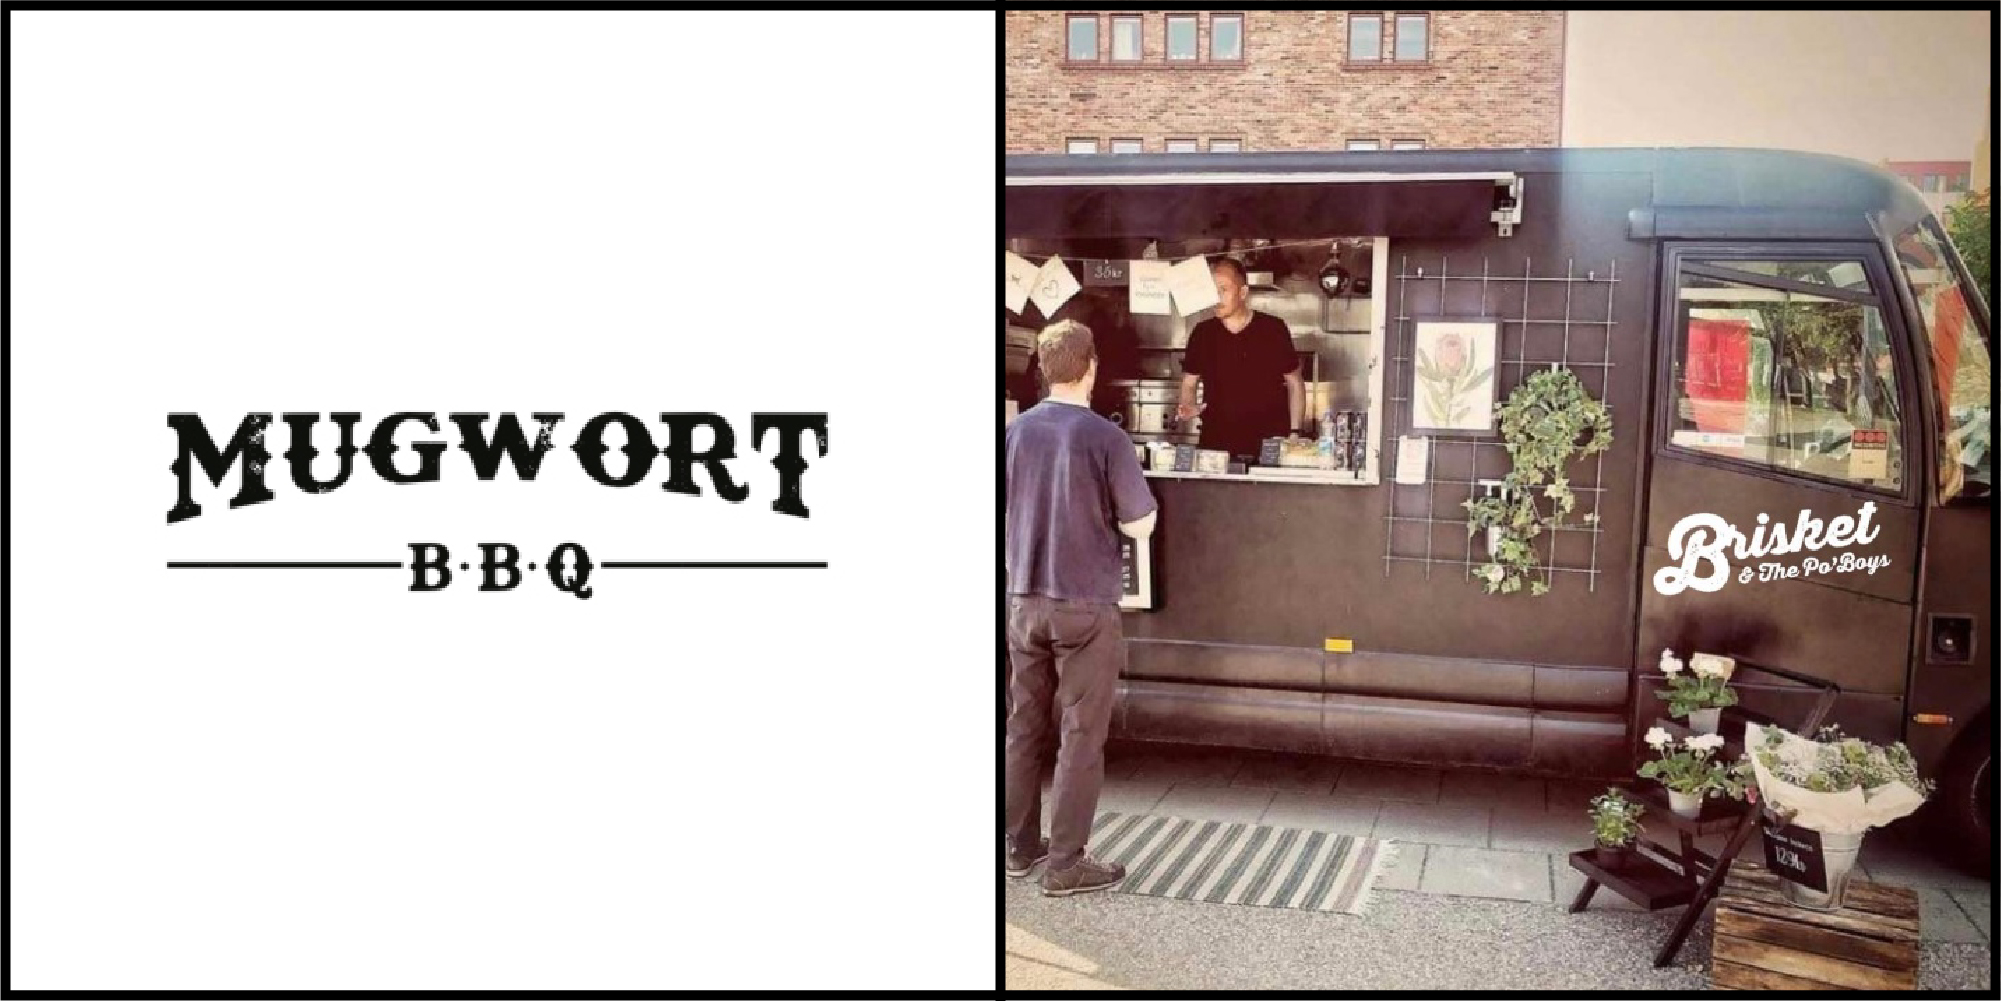 Food Truck - MUGWORT AB